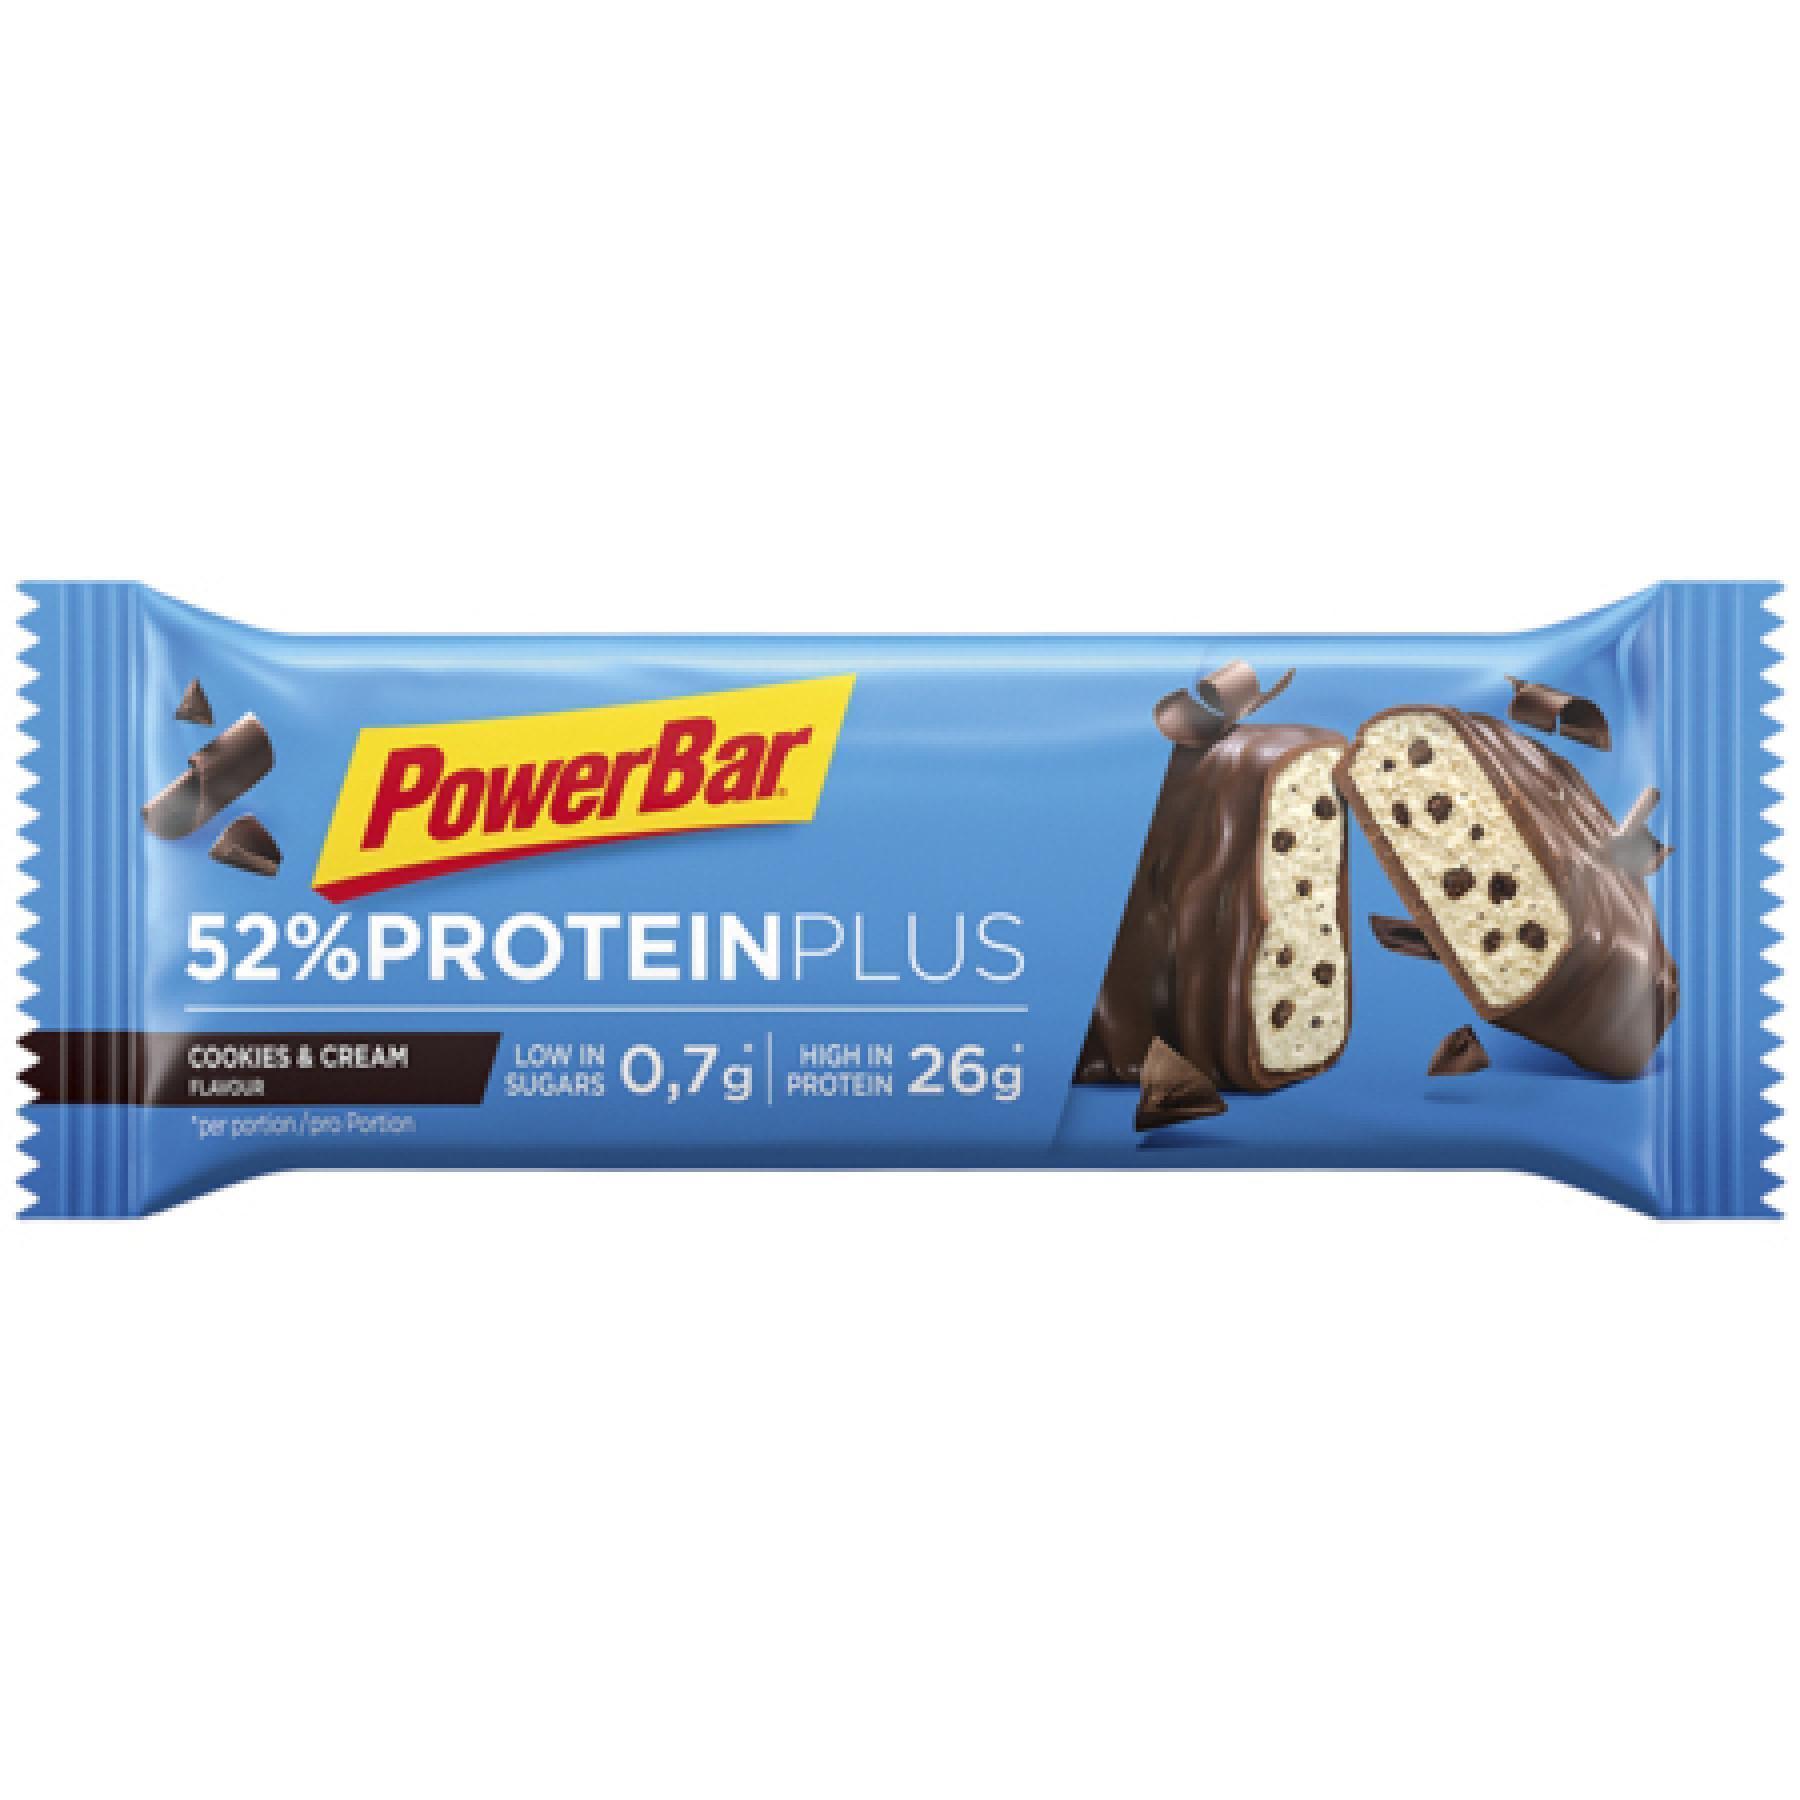 Packung mit 20 Riegeln PowerBar 52% ProteinPlus Low Sugar Cookies & Cream